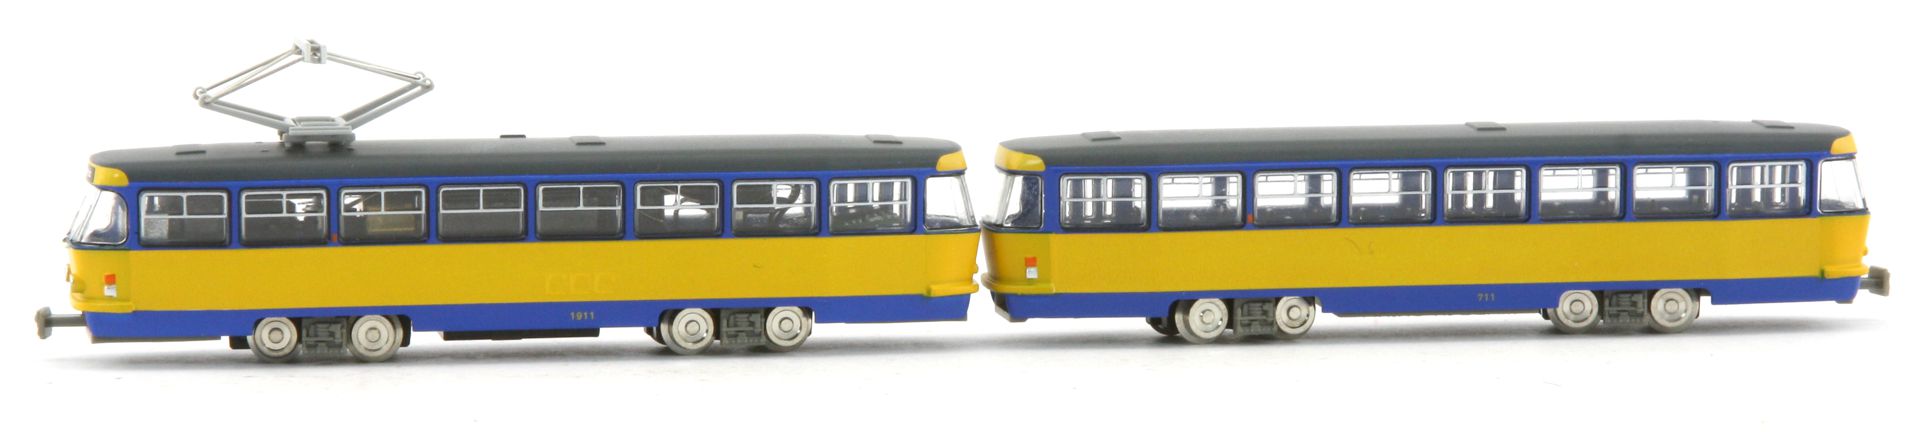 TOMYTEC 977821-AE - Leipziger Straßenbahn Tatra T4-B4, grau-blau-gelb, Ep.IV